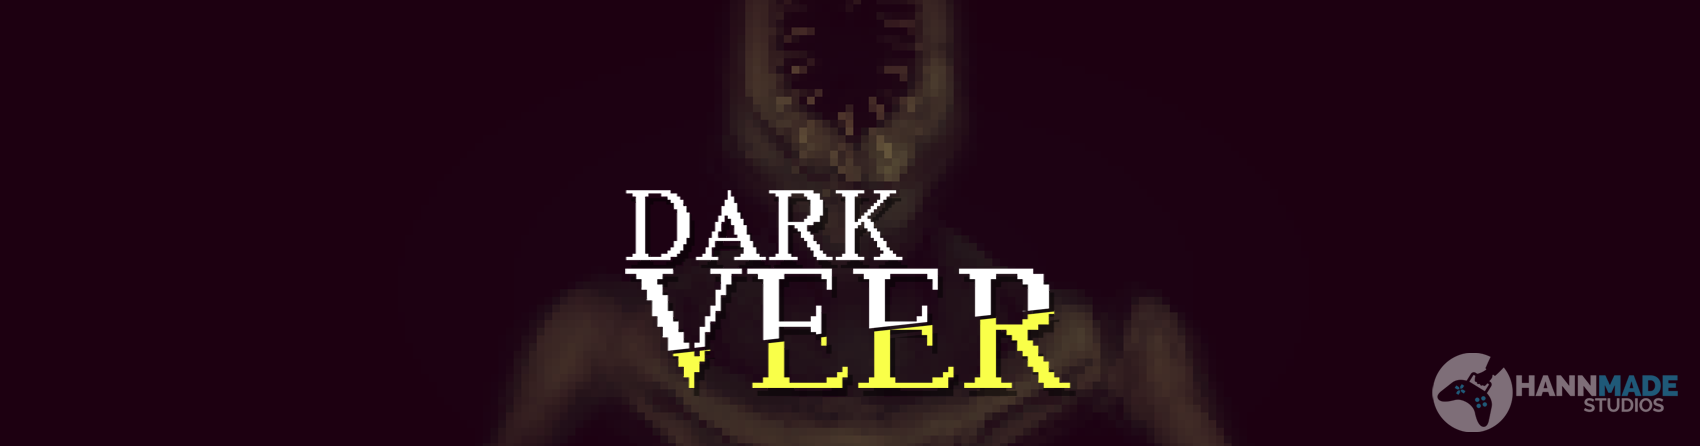 Dark Veer (2019)  